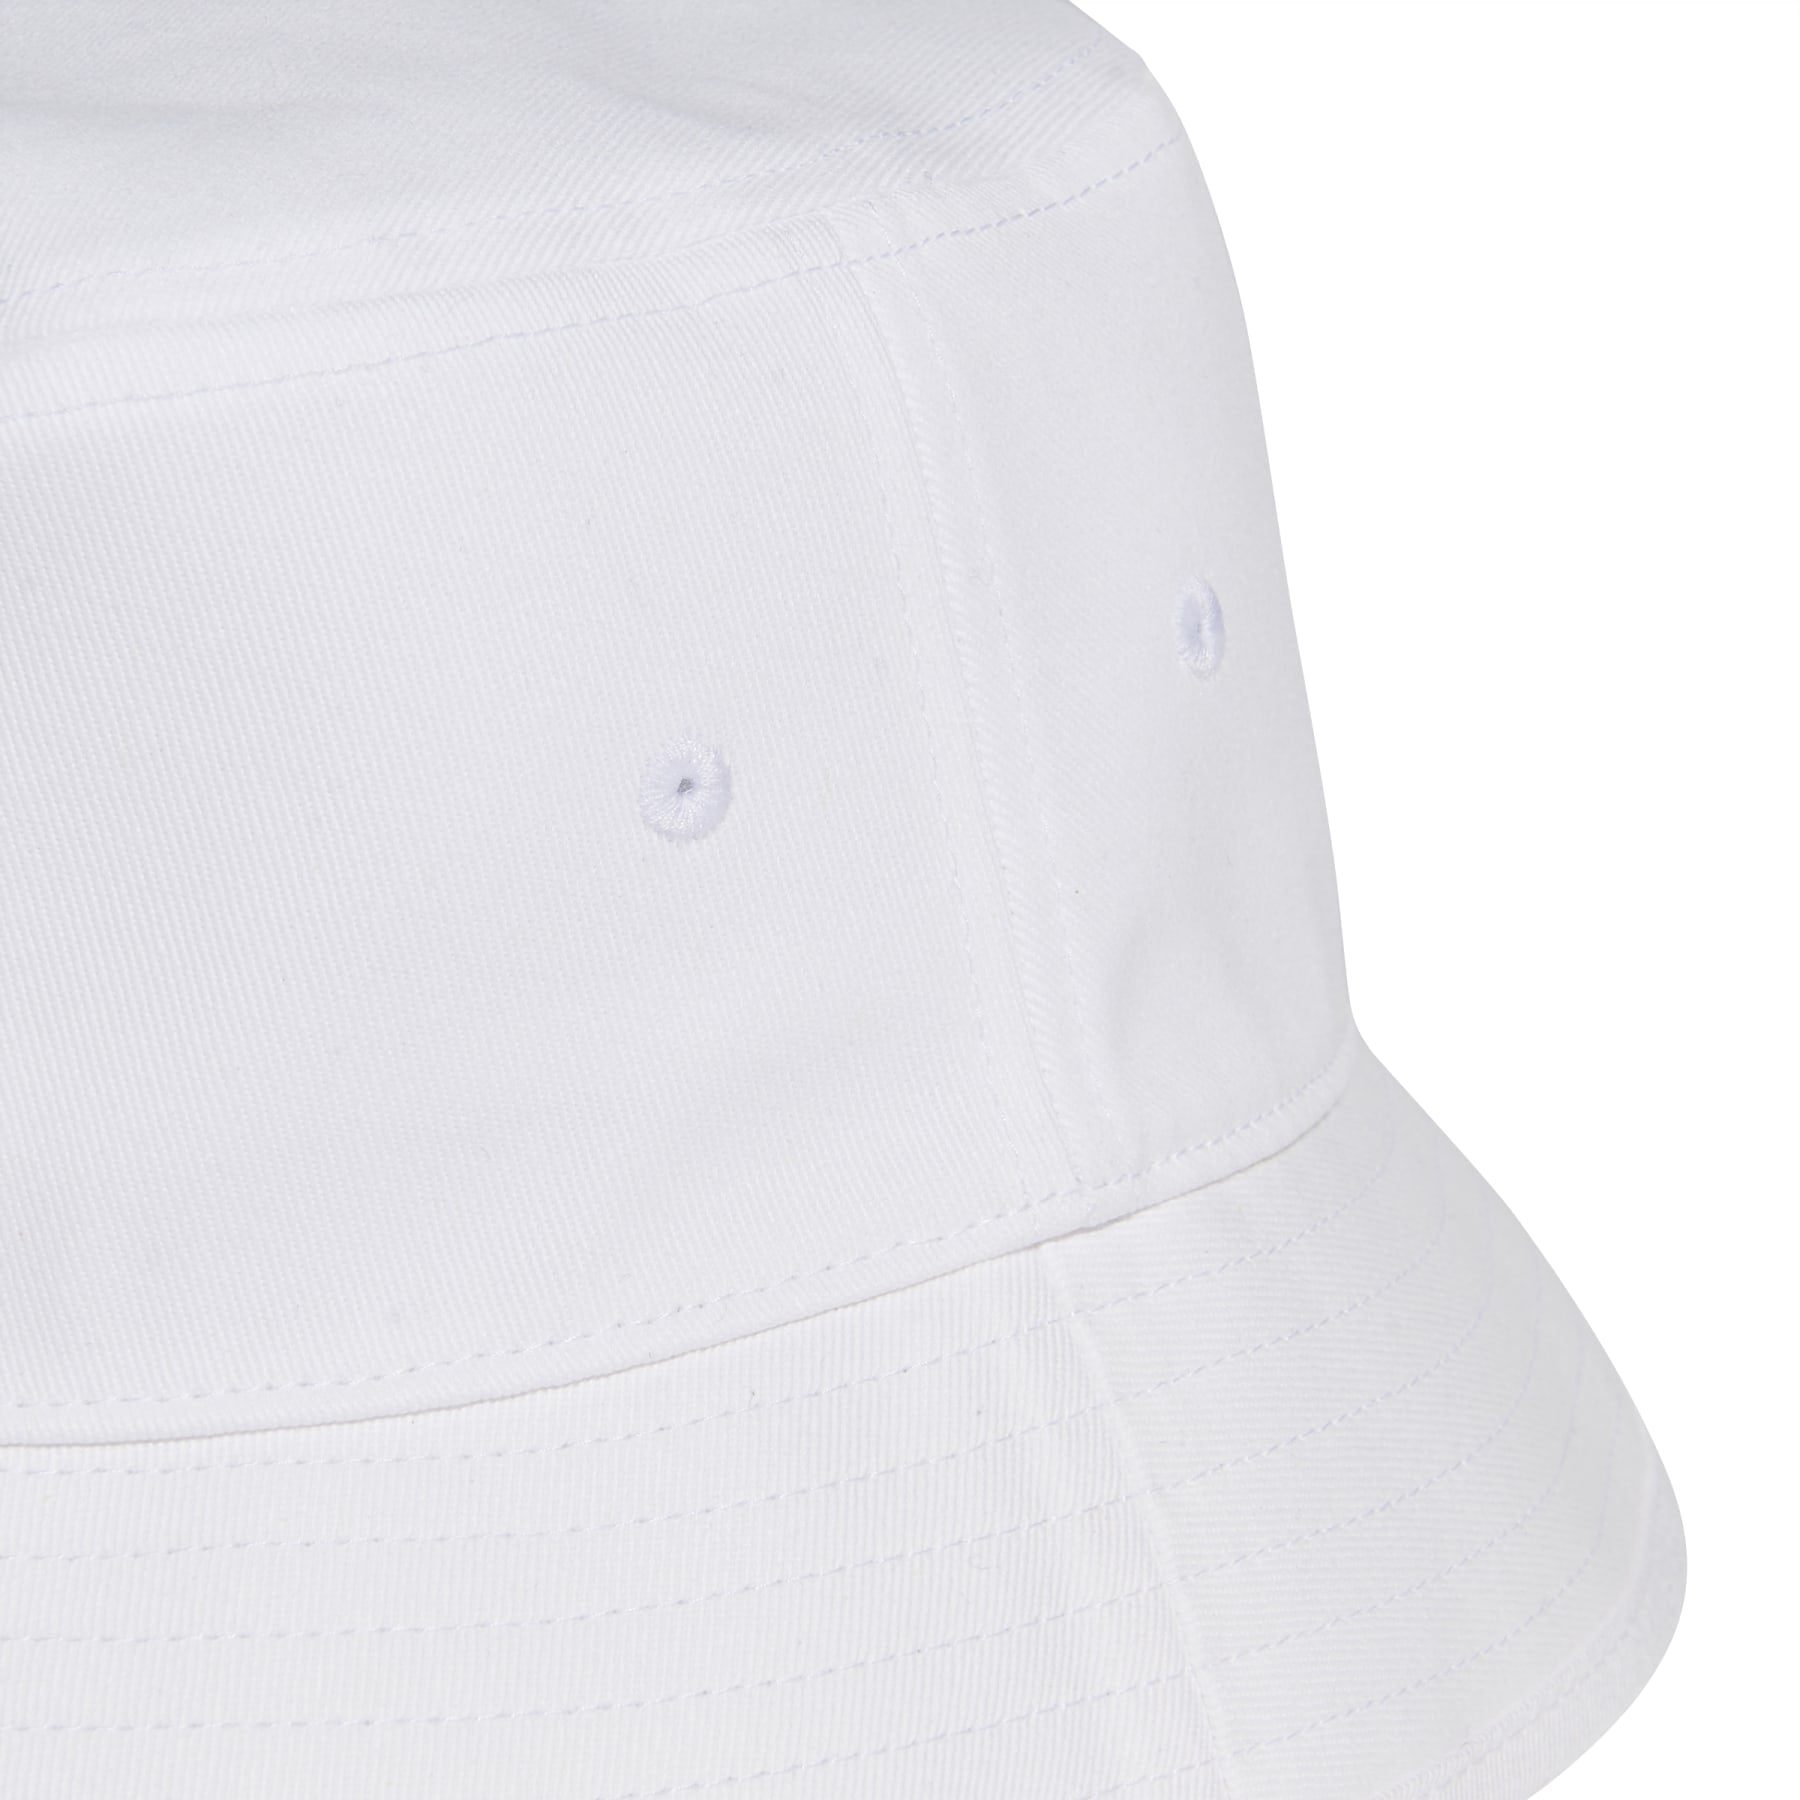 Trefoil Bucket Hat Adicolor - White